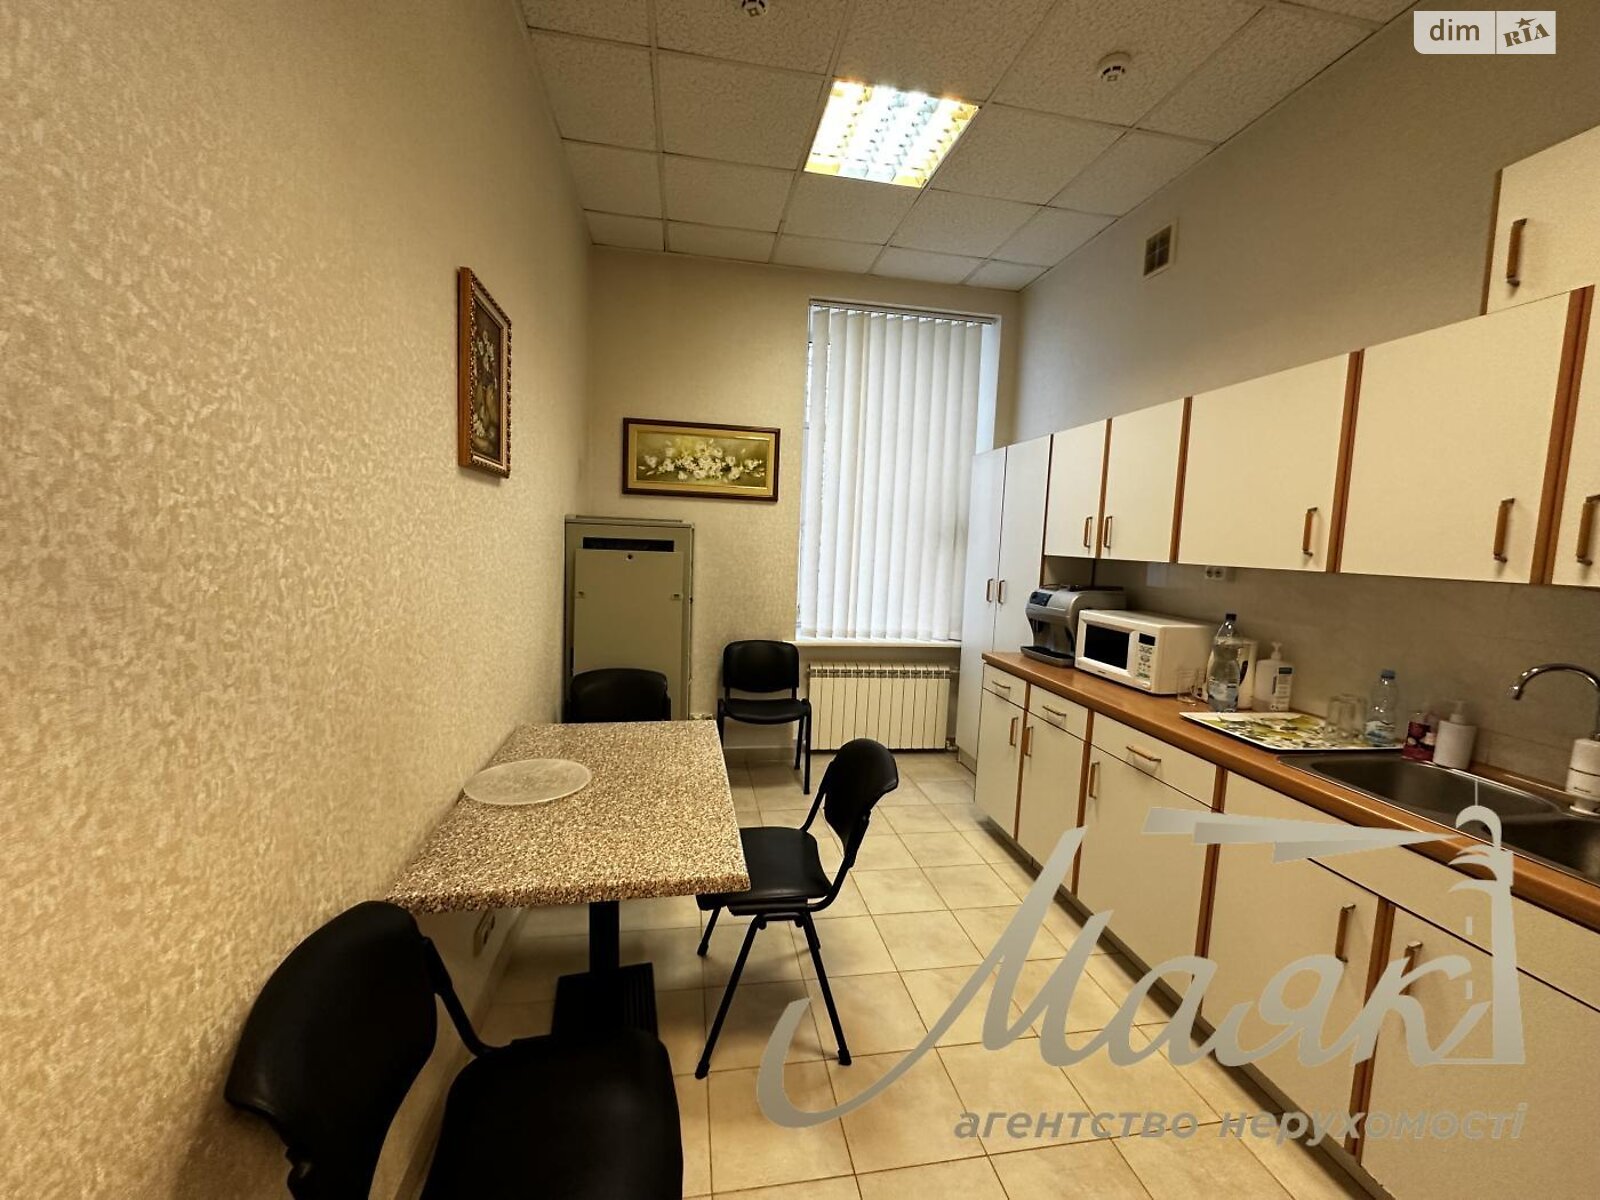 Аренда офисного помещения в Киеве, Панаса Мирного улица 1, помещений - 5, этаж - 1 фото 1